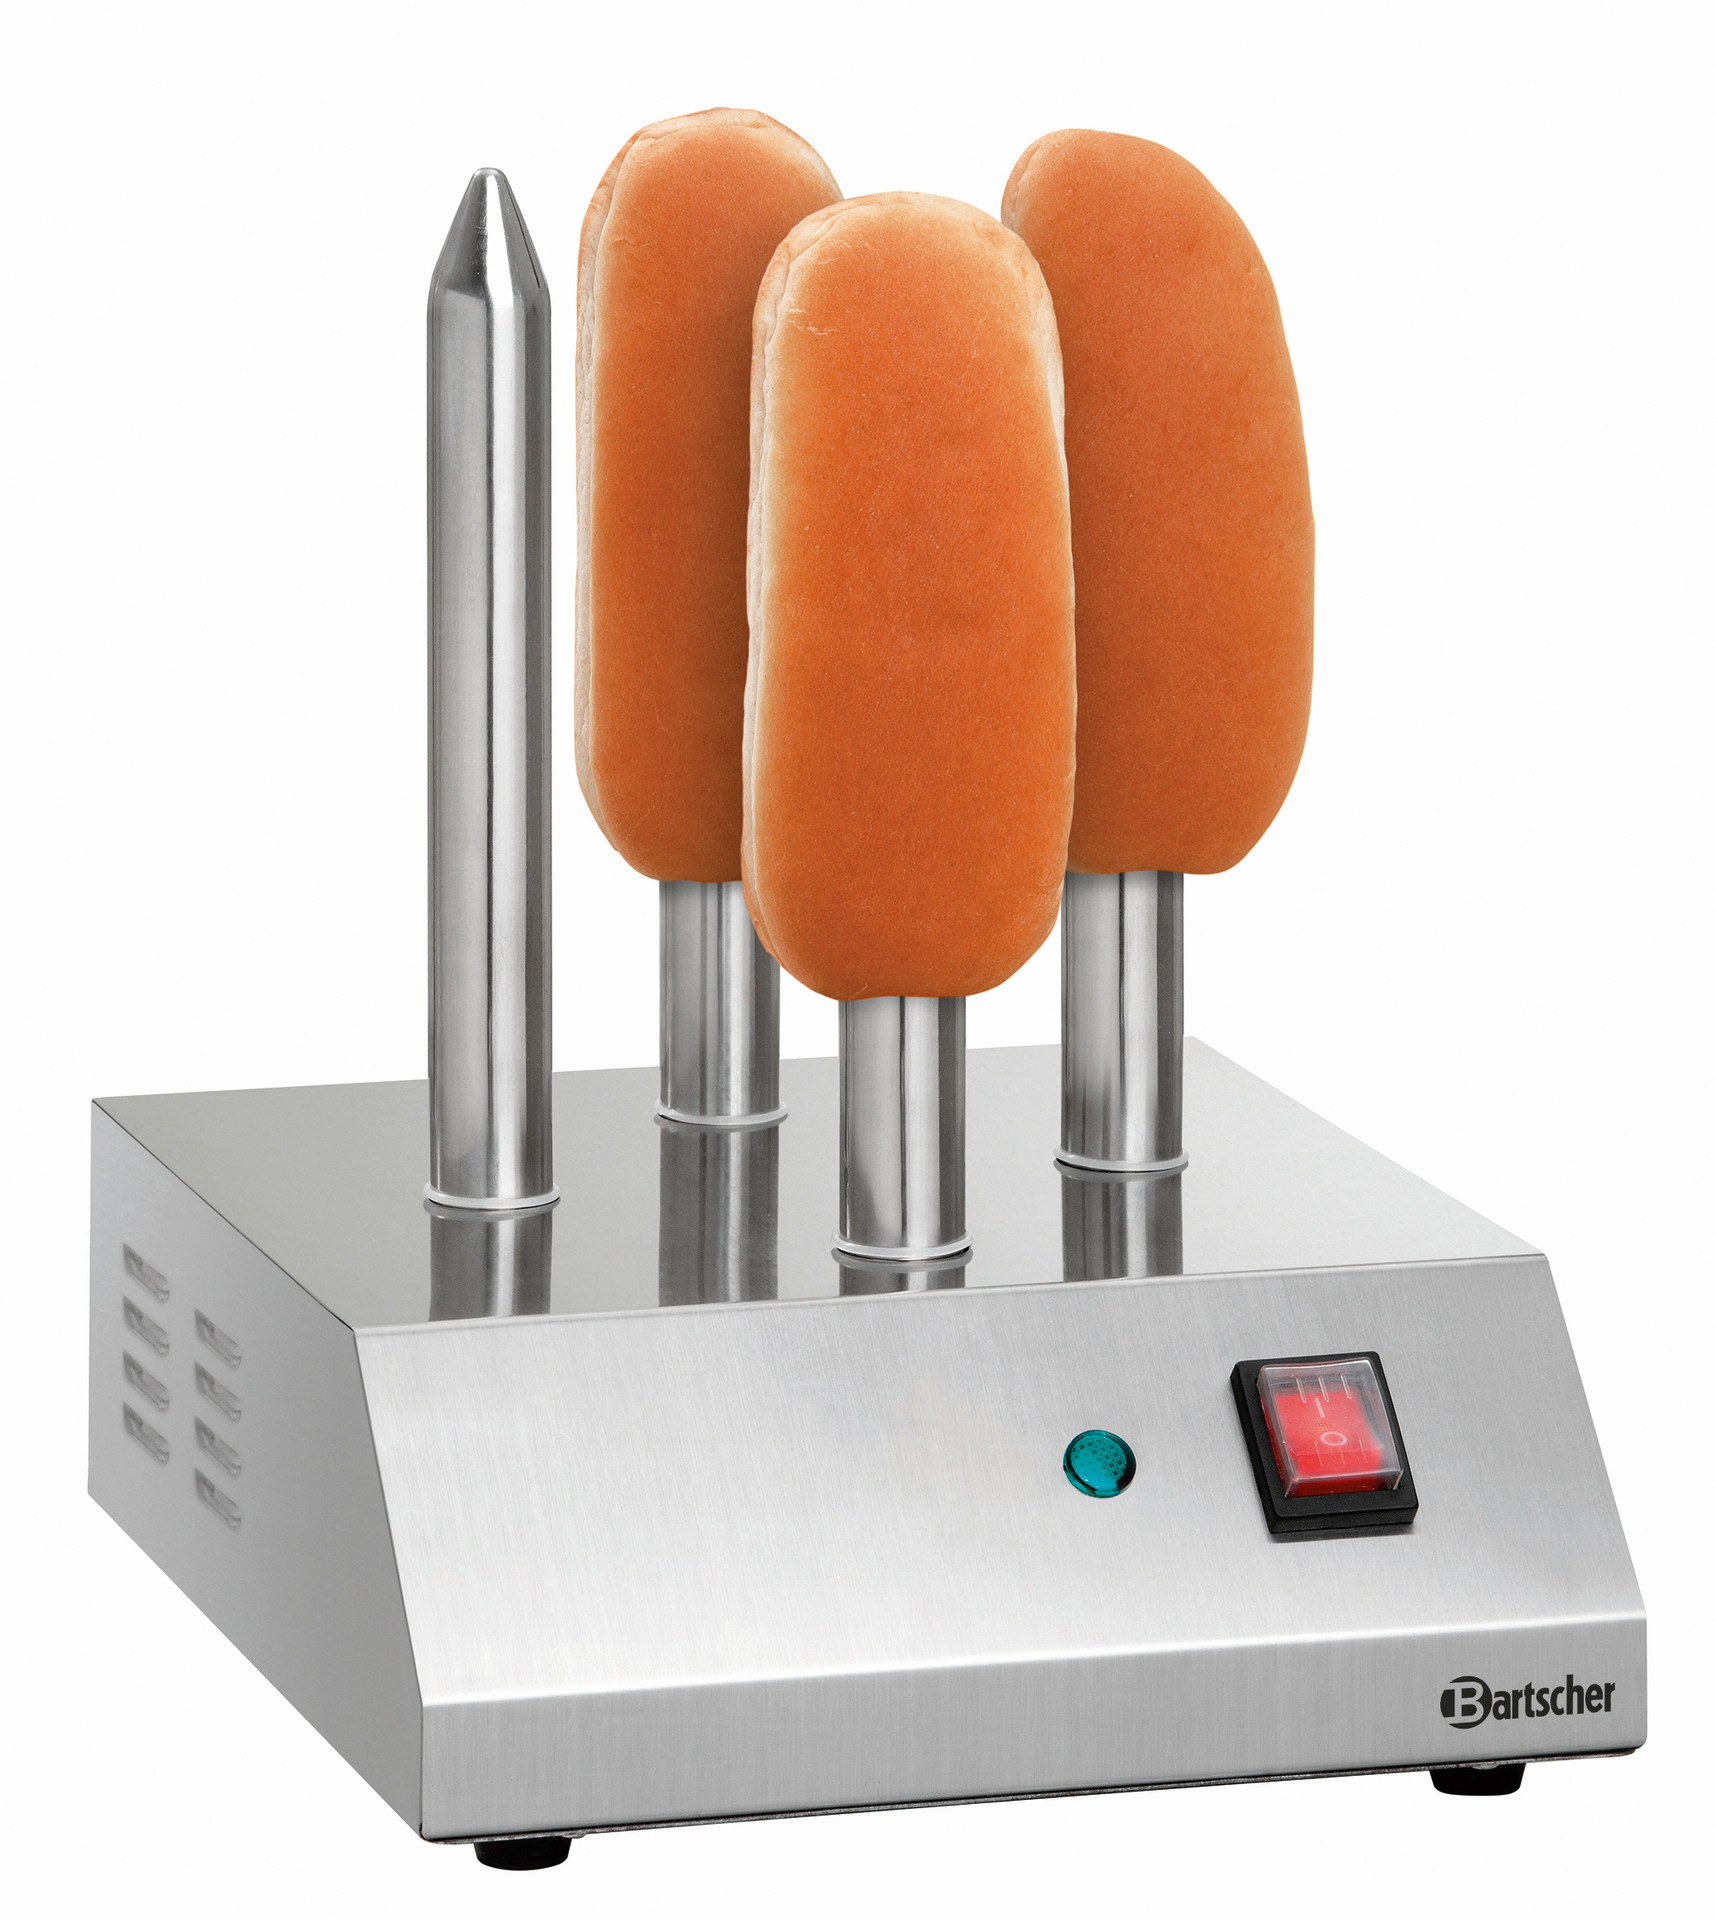 Hot-Dog-Spießtoaster mit 4 Toaststangen 240 x 280 x 310 mm / 230 V / 0,19 kW